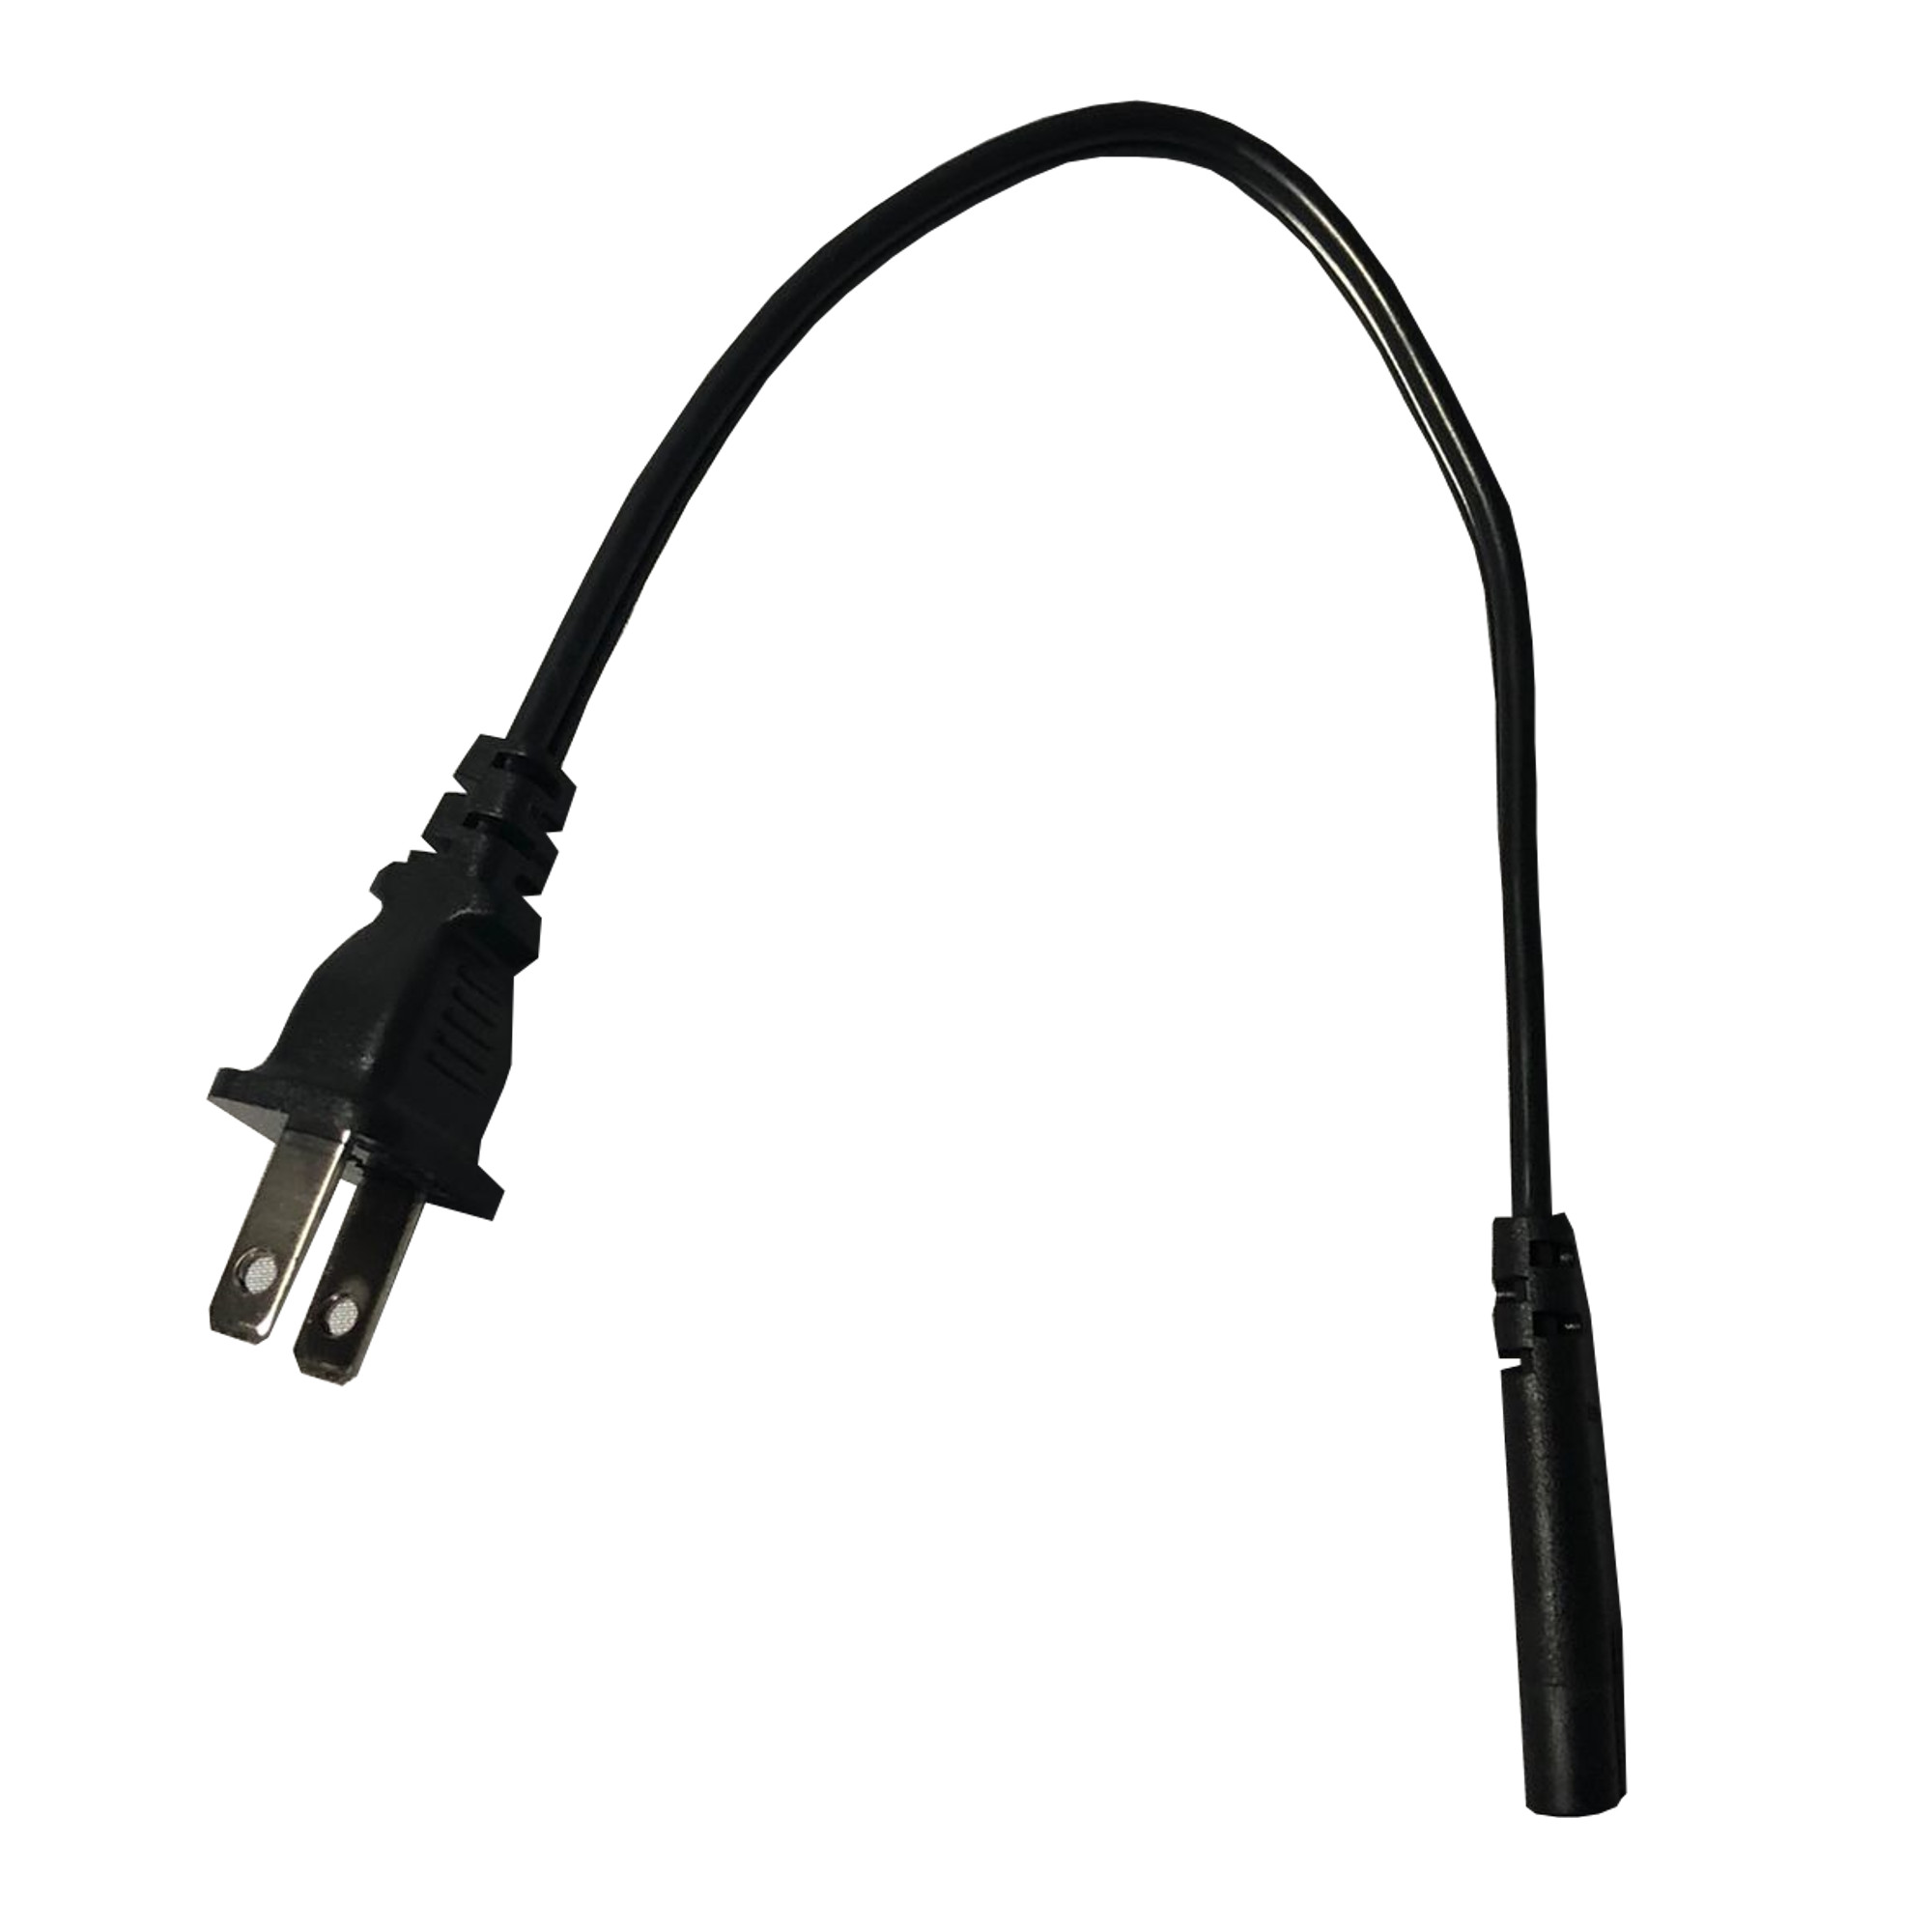 Cable de Poder Interlock 220V Tipo 8 